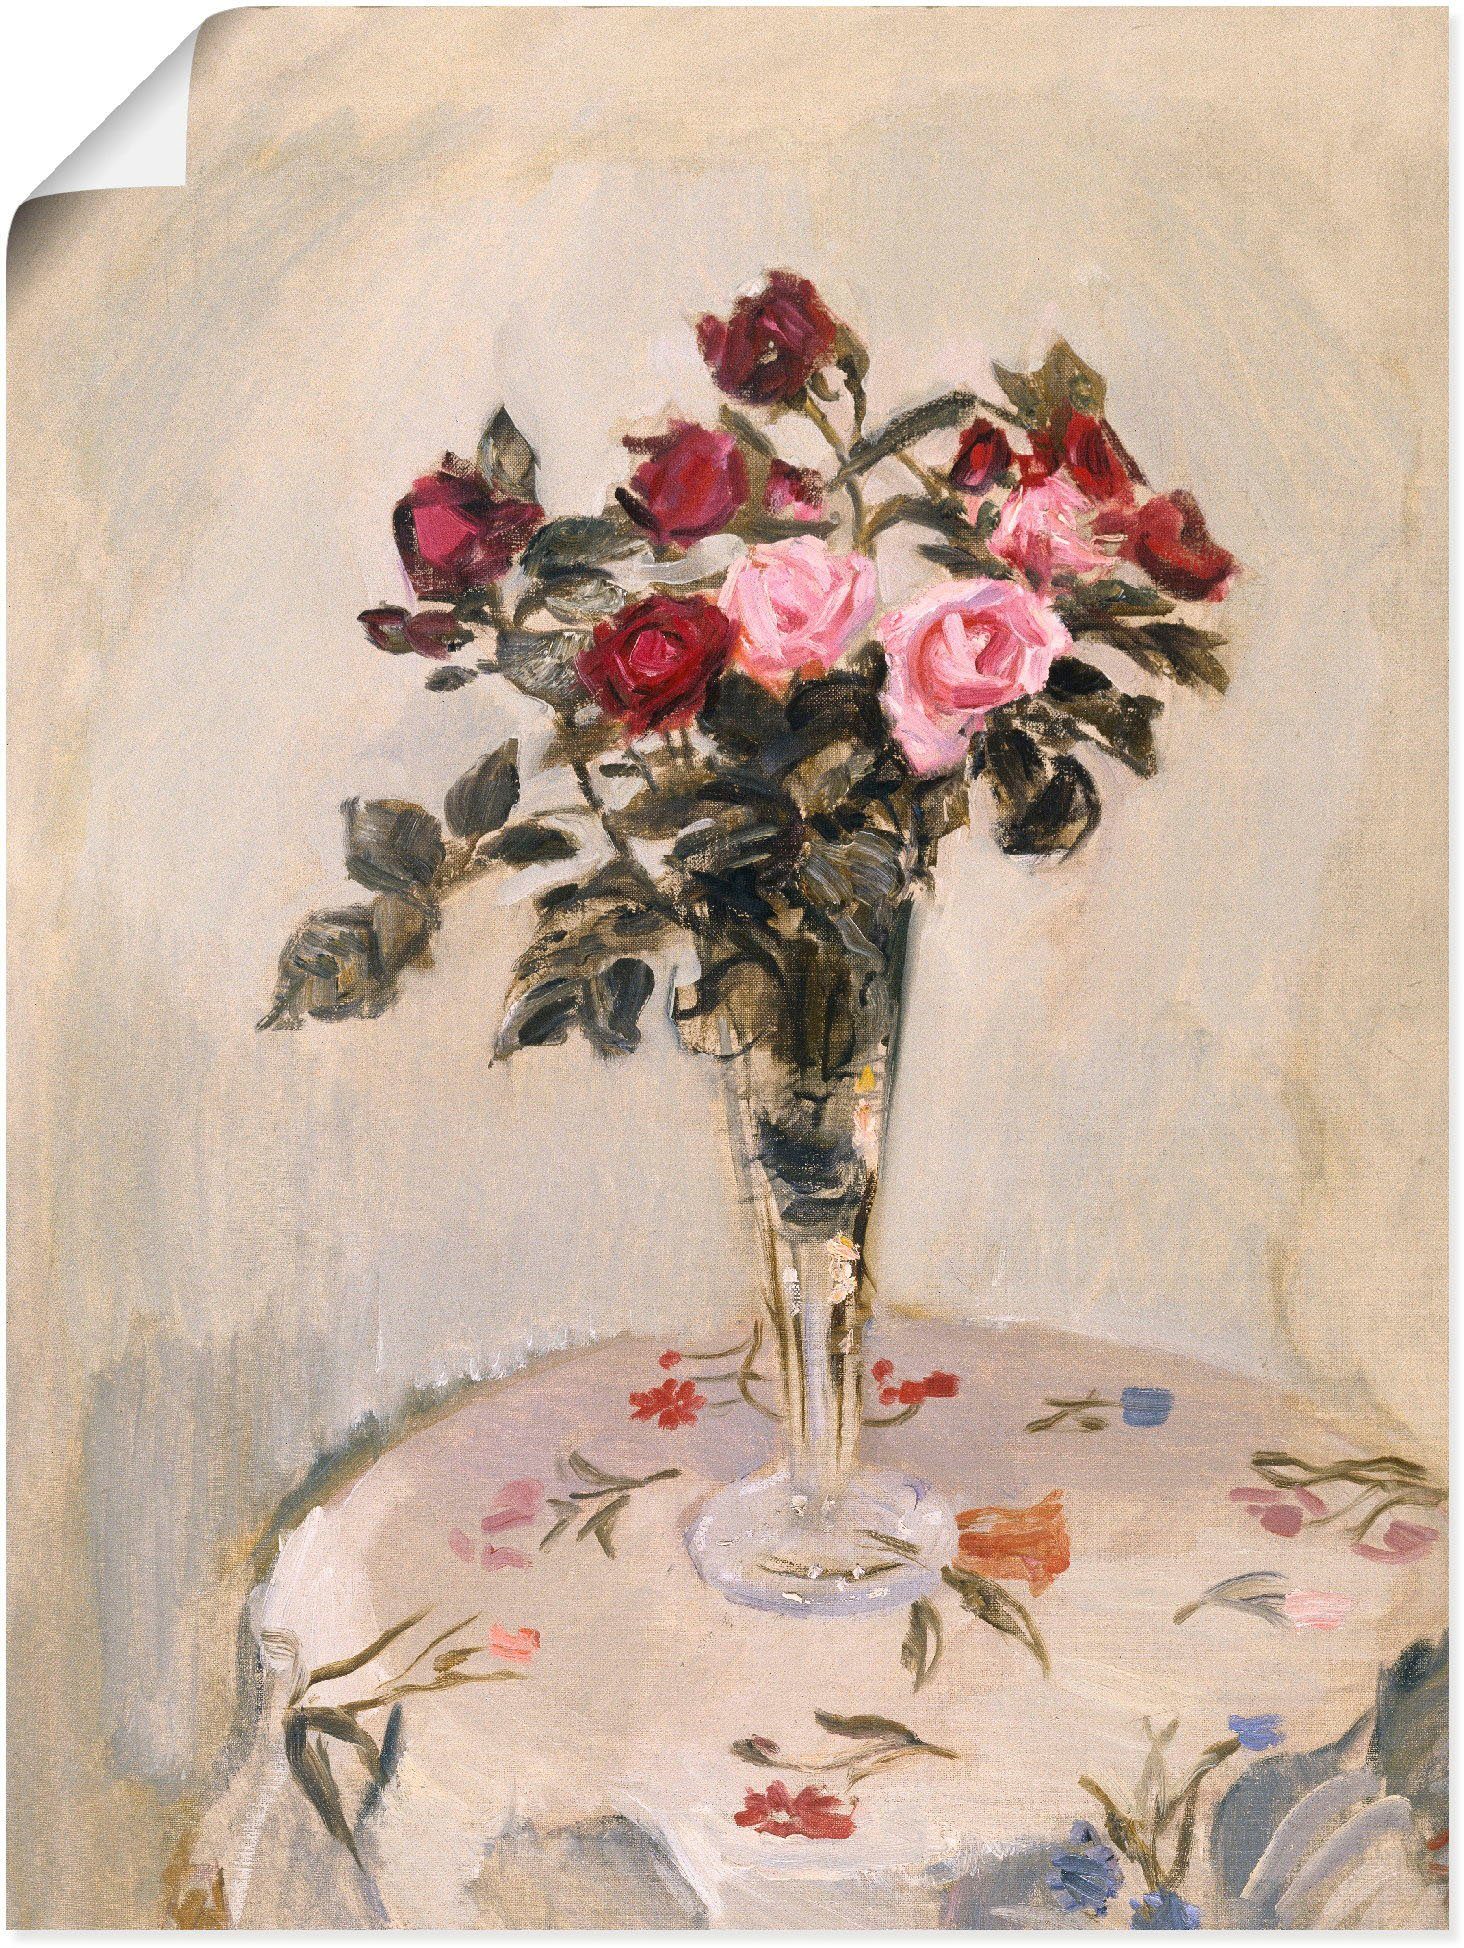 Artland Artprint Stilleven met rozen. 1904 in vele afmetingen & productsoorten -artprint op linnen, poster, muursticker / wandfolie ook geschikt voor de badkamer (1 stuk)